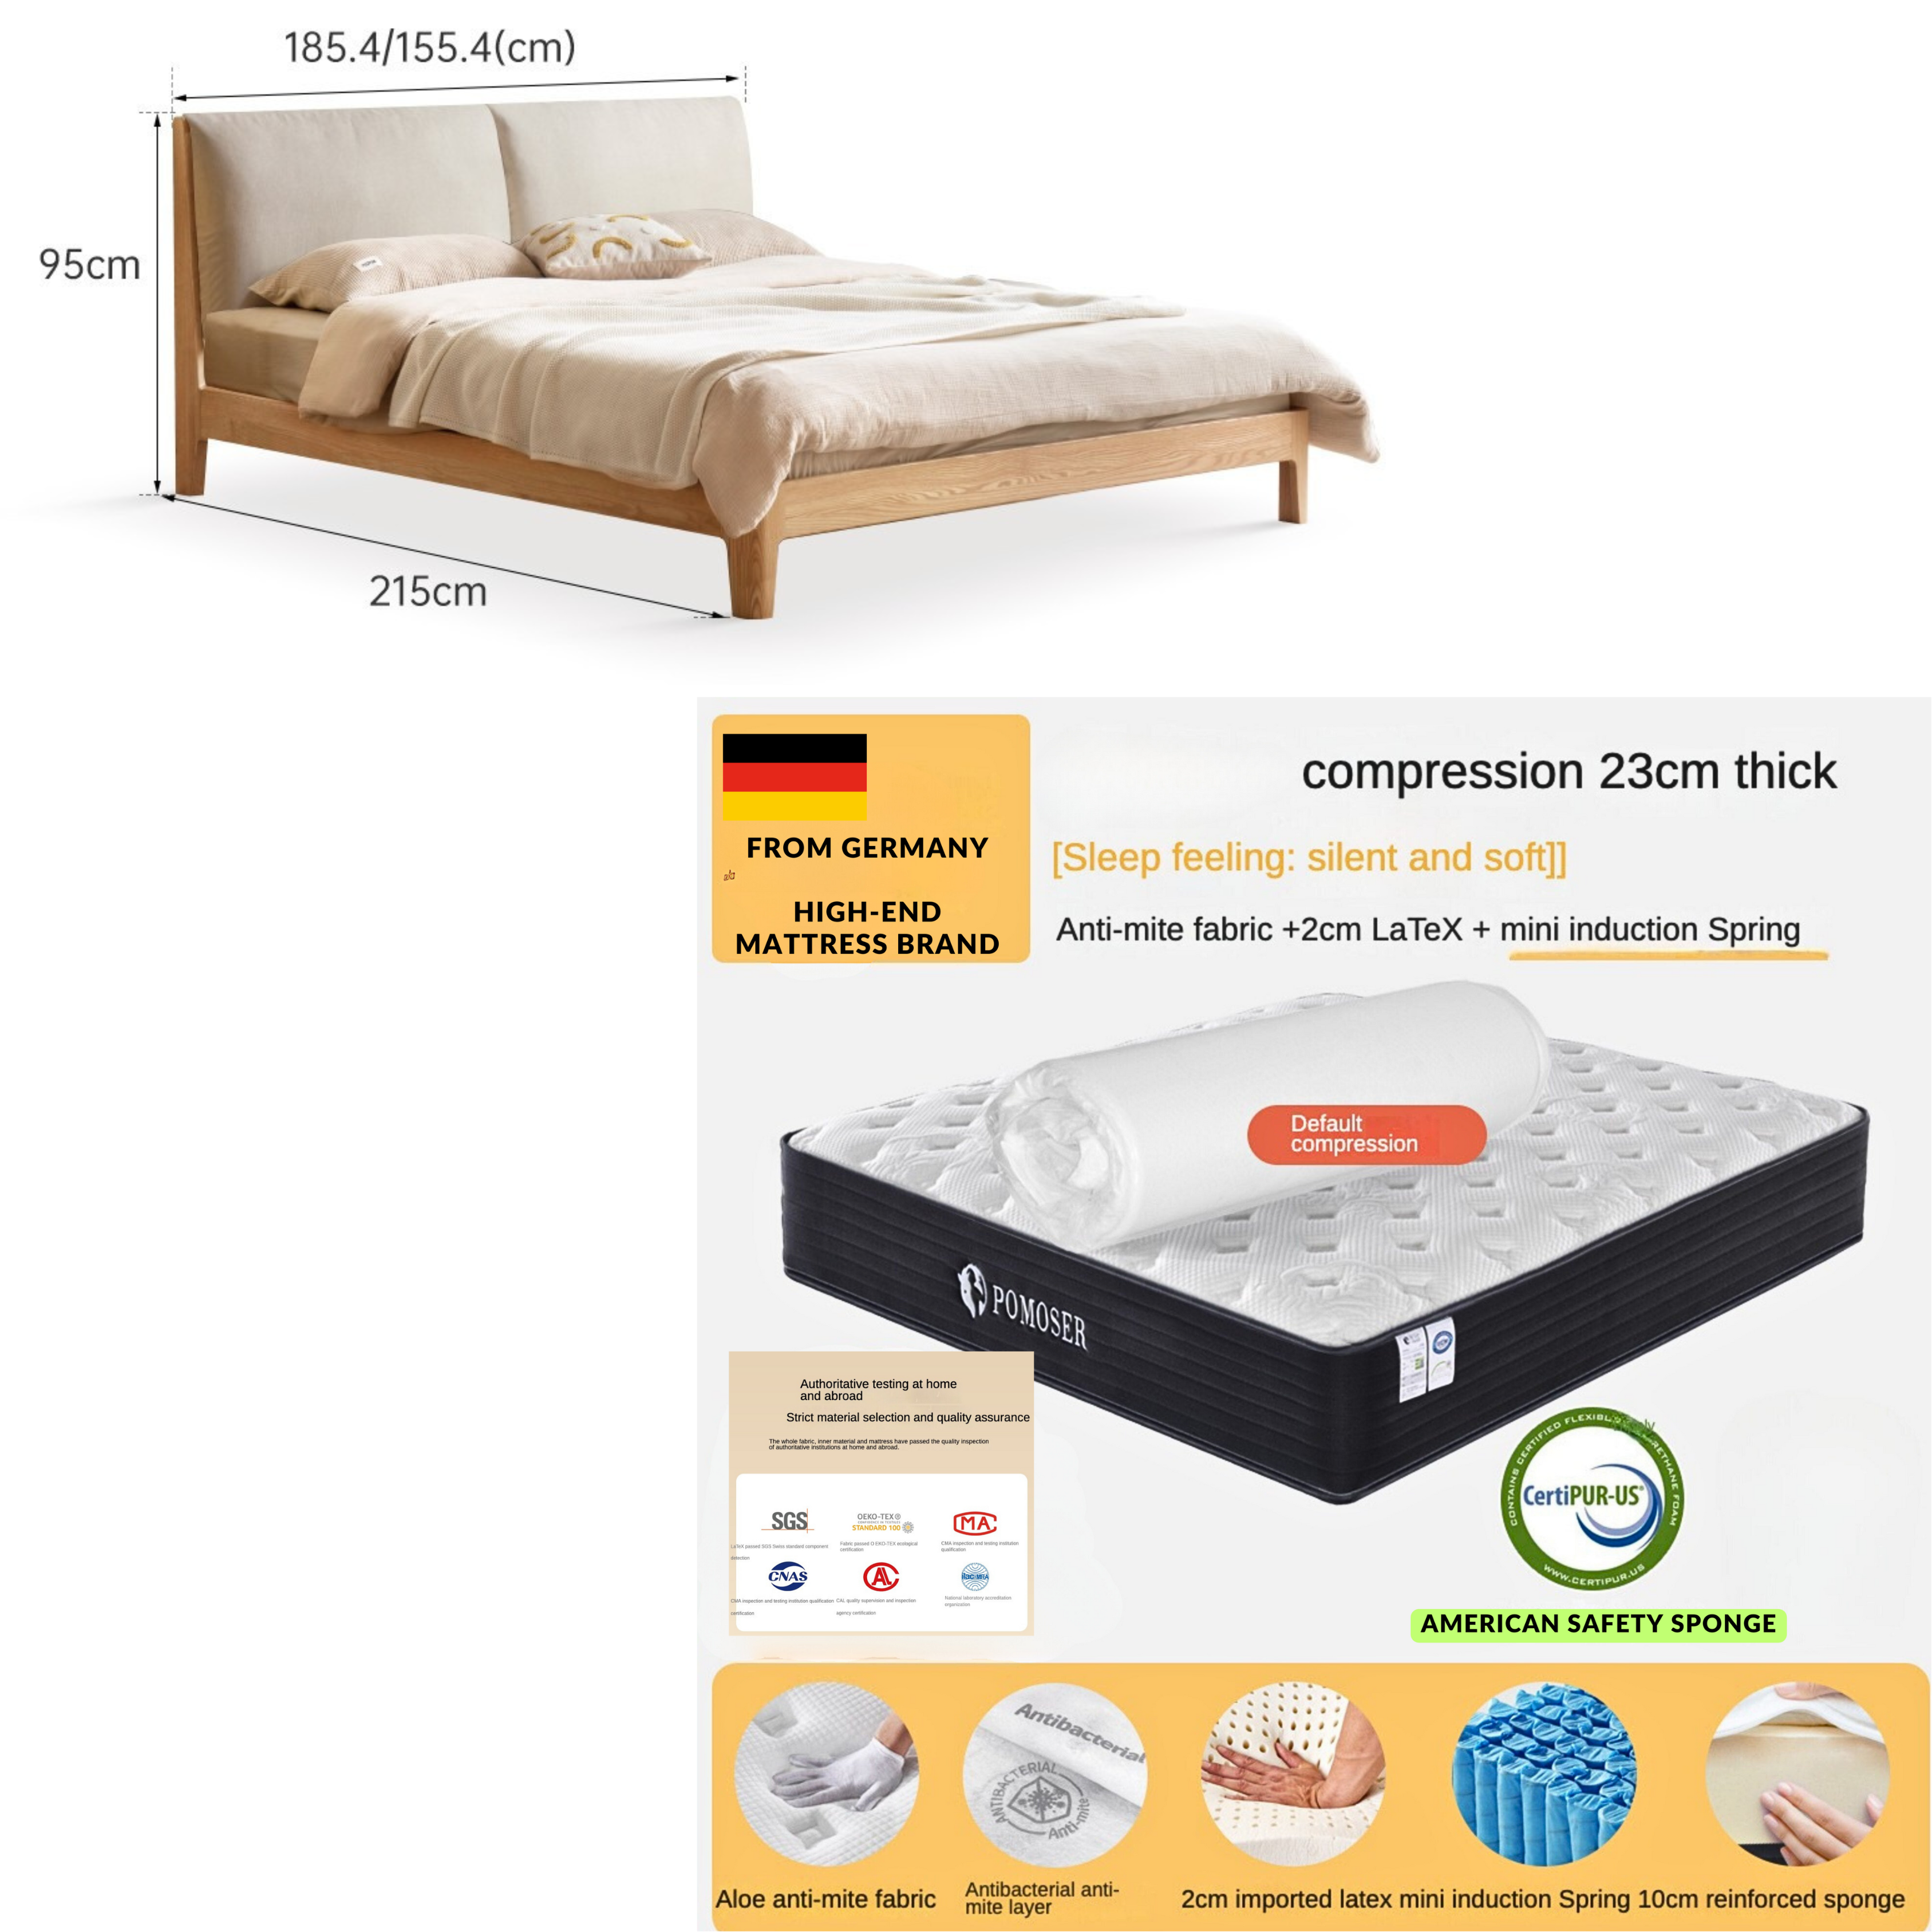 Oak Solid Wood Fabric Soft Bed"